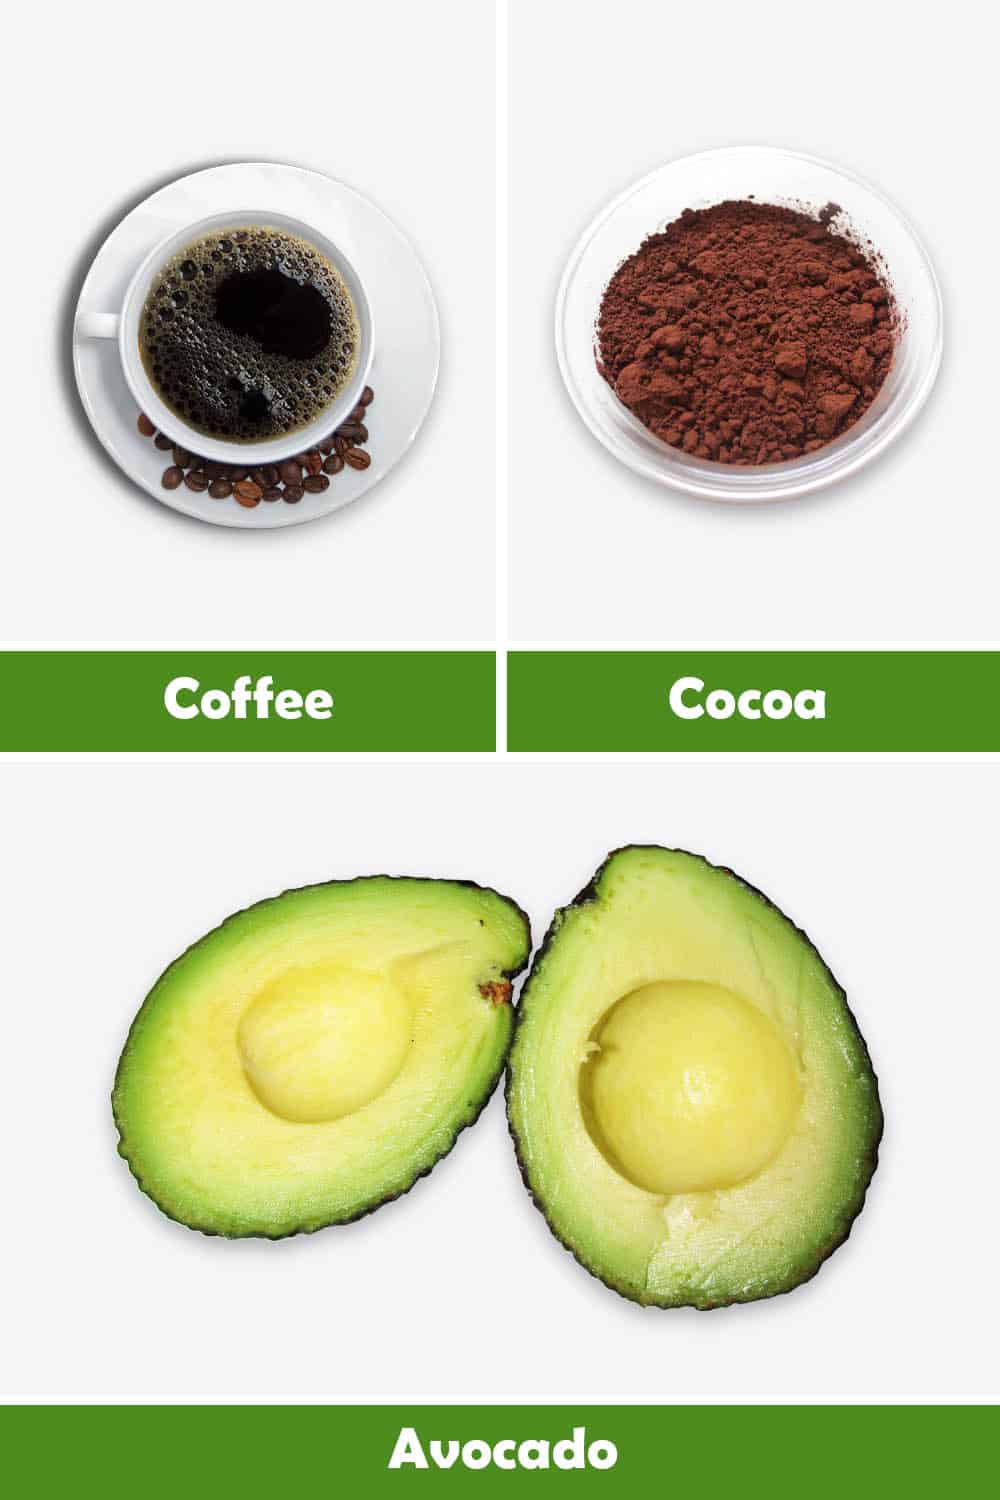 COFFEE, COCOA AND AVOCADO